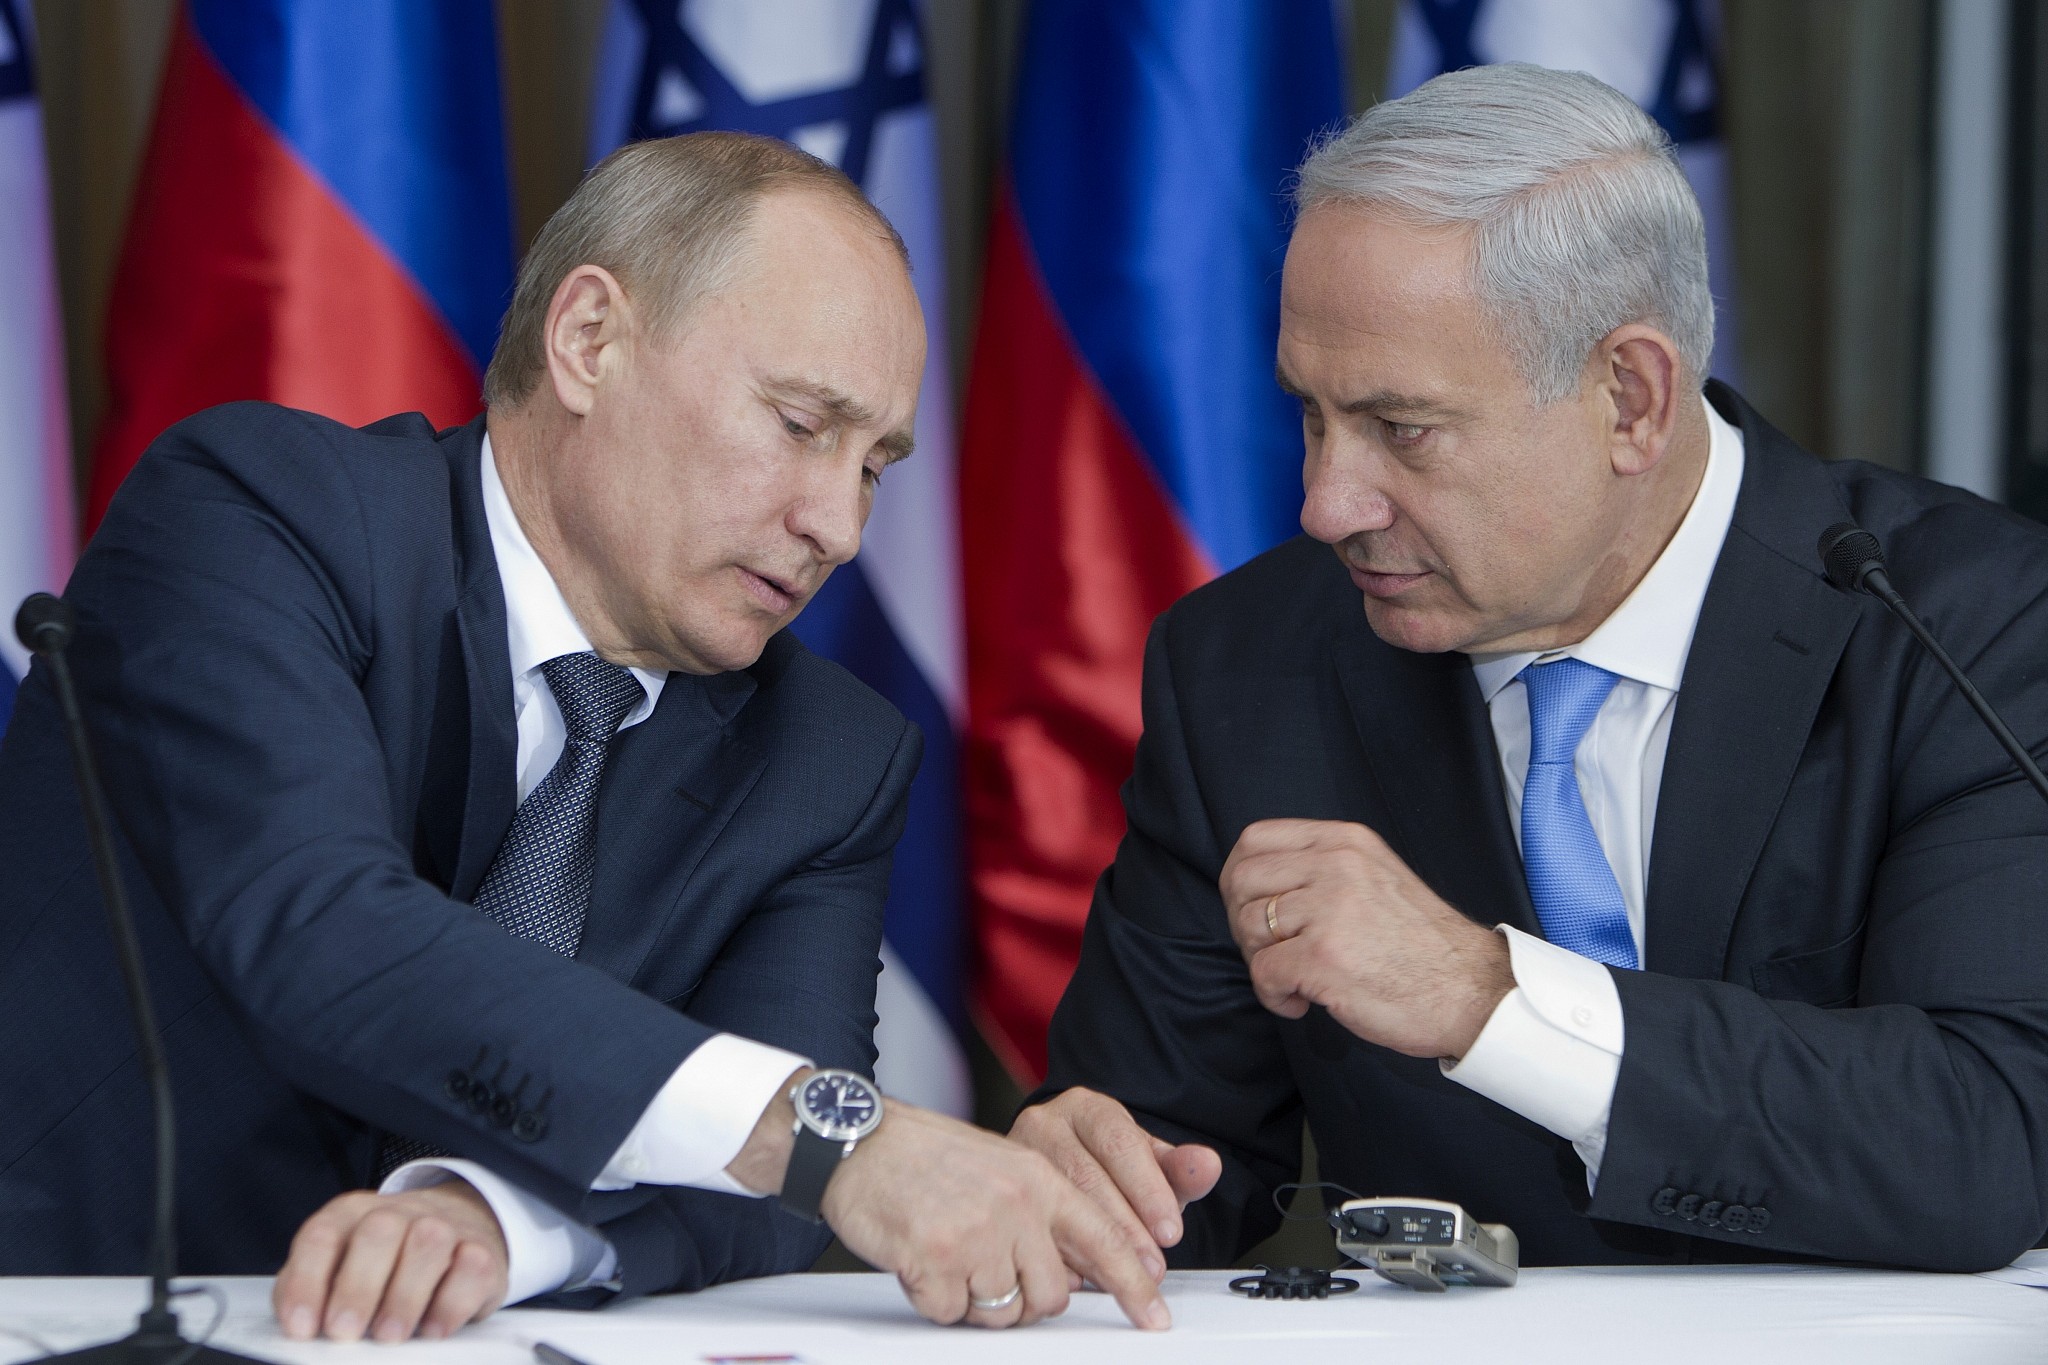 I crimini di Netanyahu non sono inferiori a quelli di Putin: per lui valgono due pesi e due misure